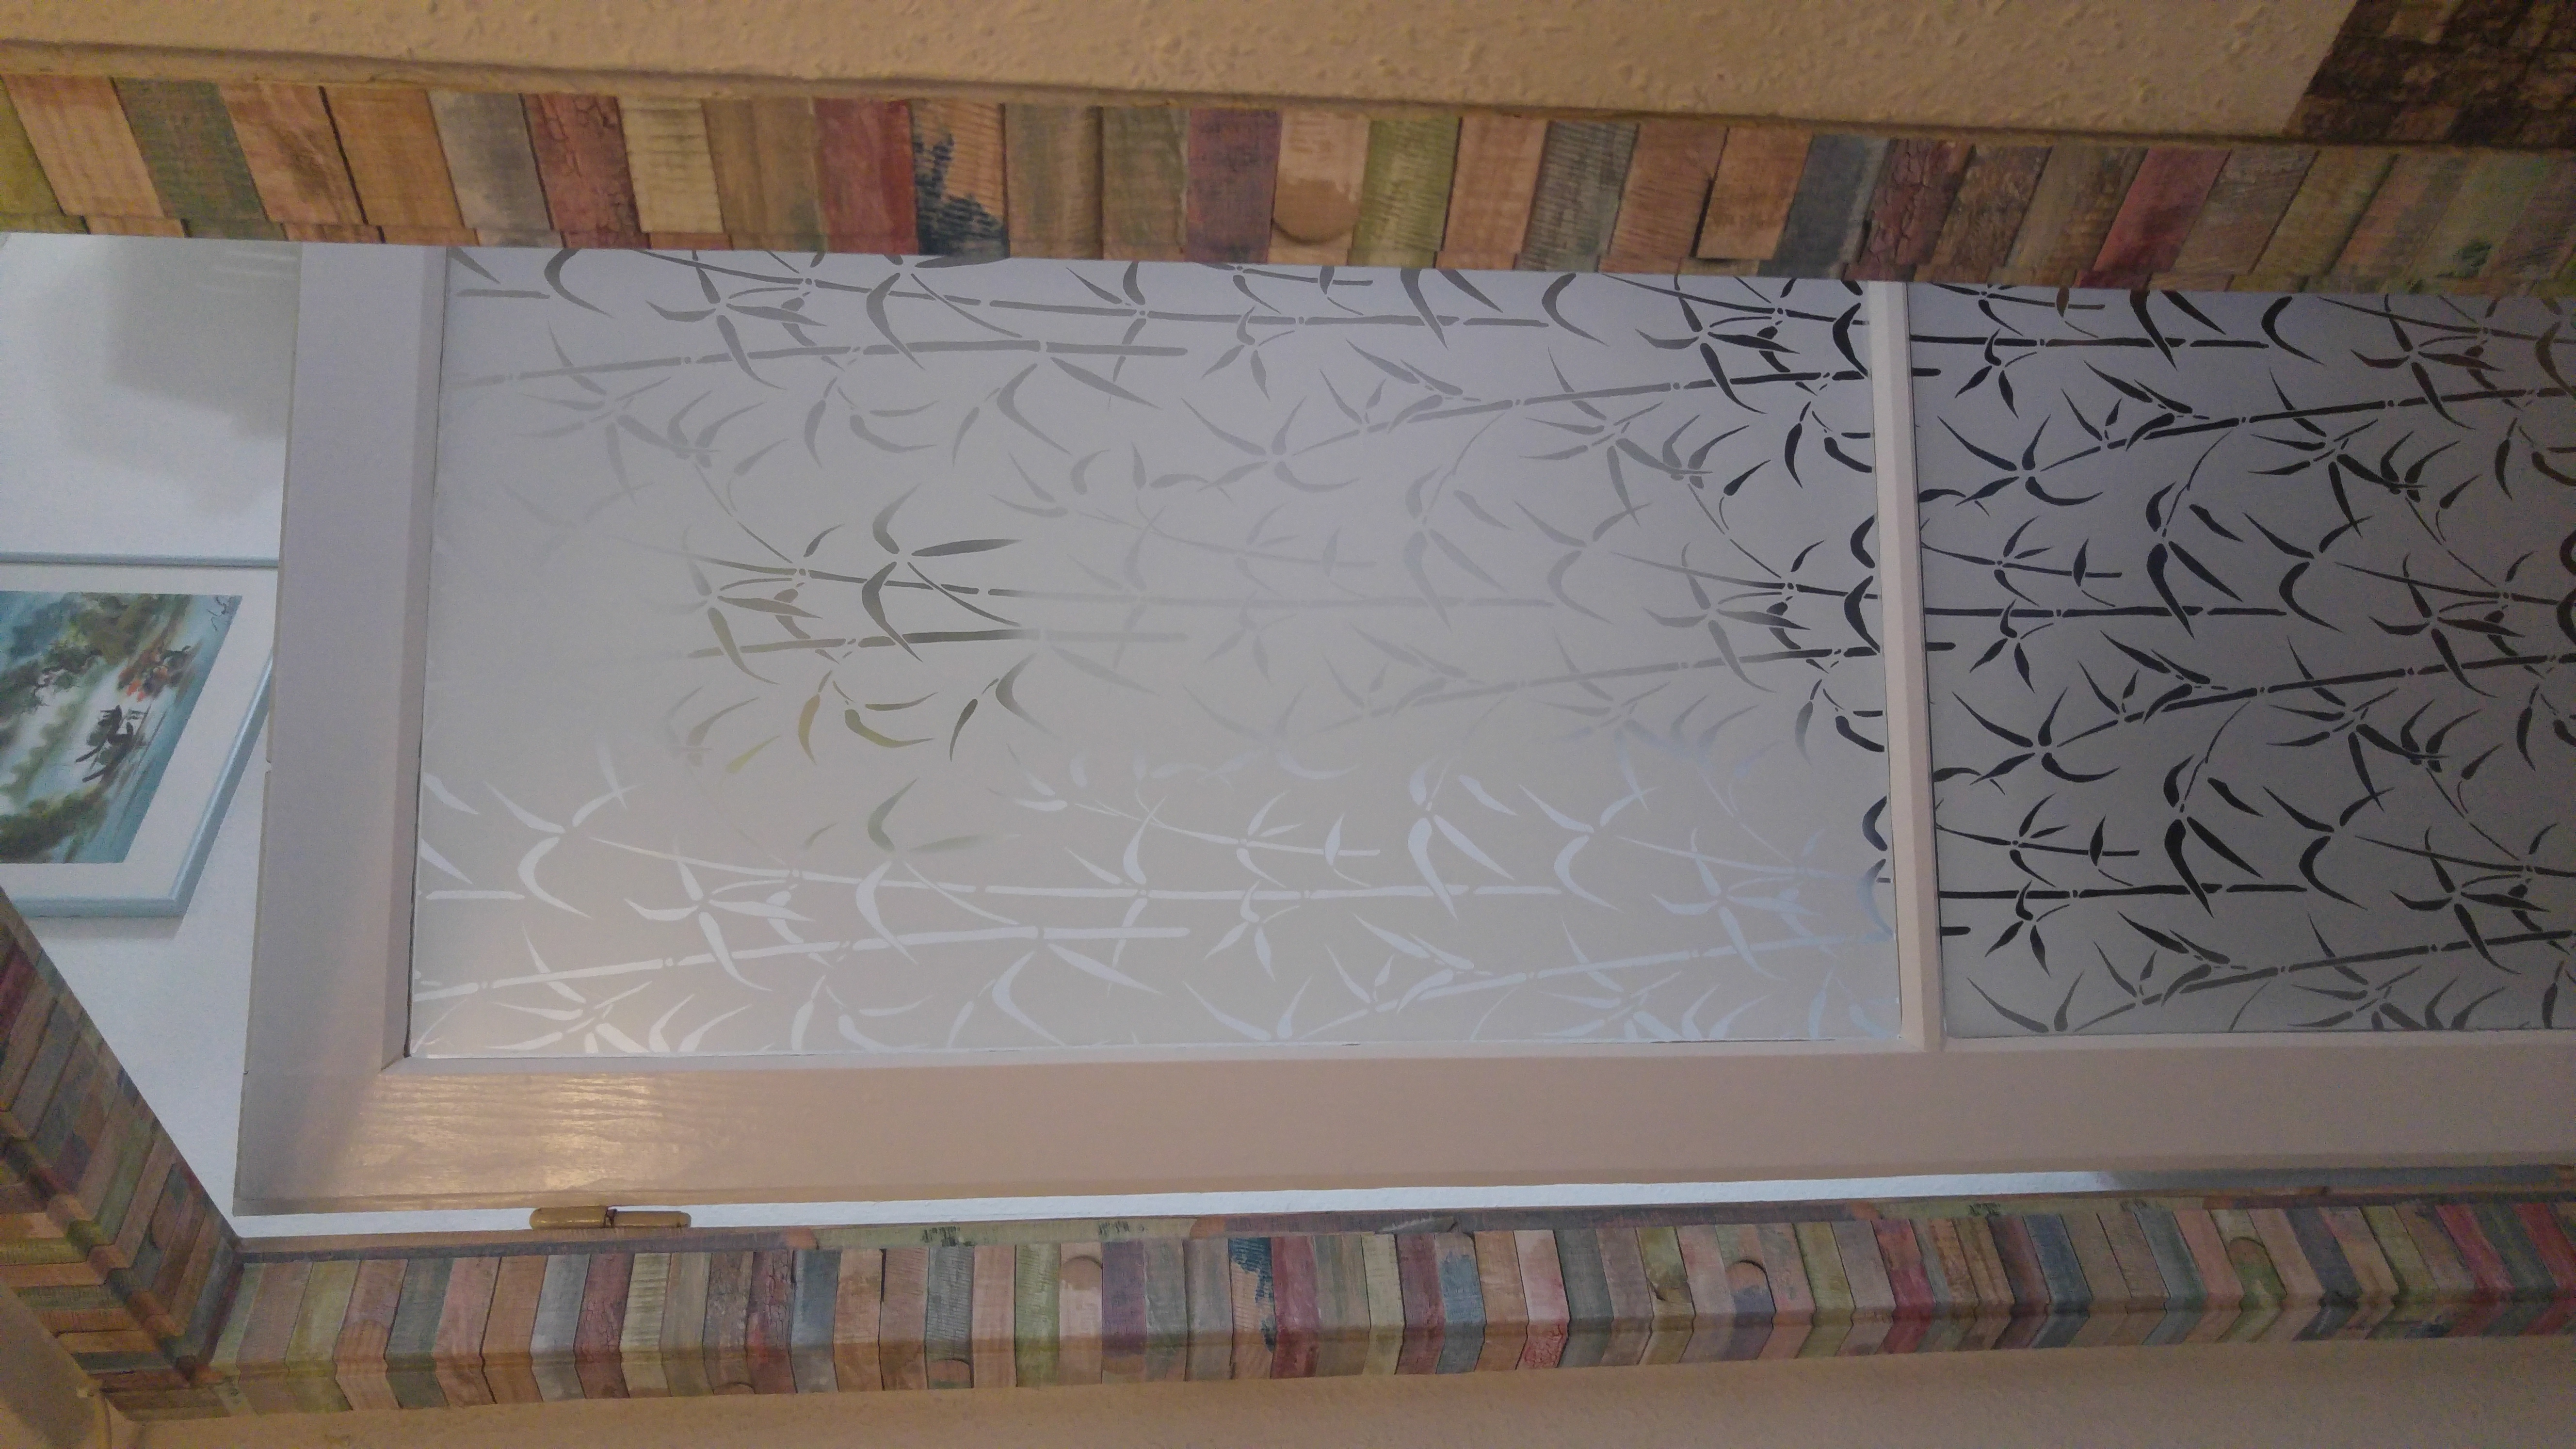   Bambusz Ablak Ragasztó Nélküli Standard Ablakfólia (Bamboo Static) (1,5 m x 45 cm)
